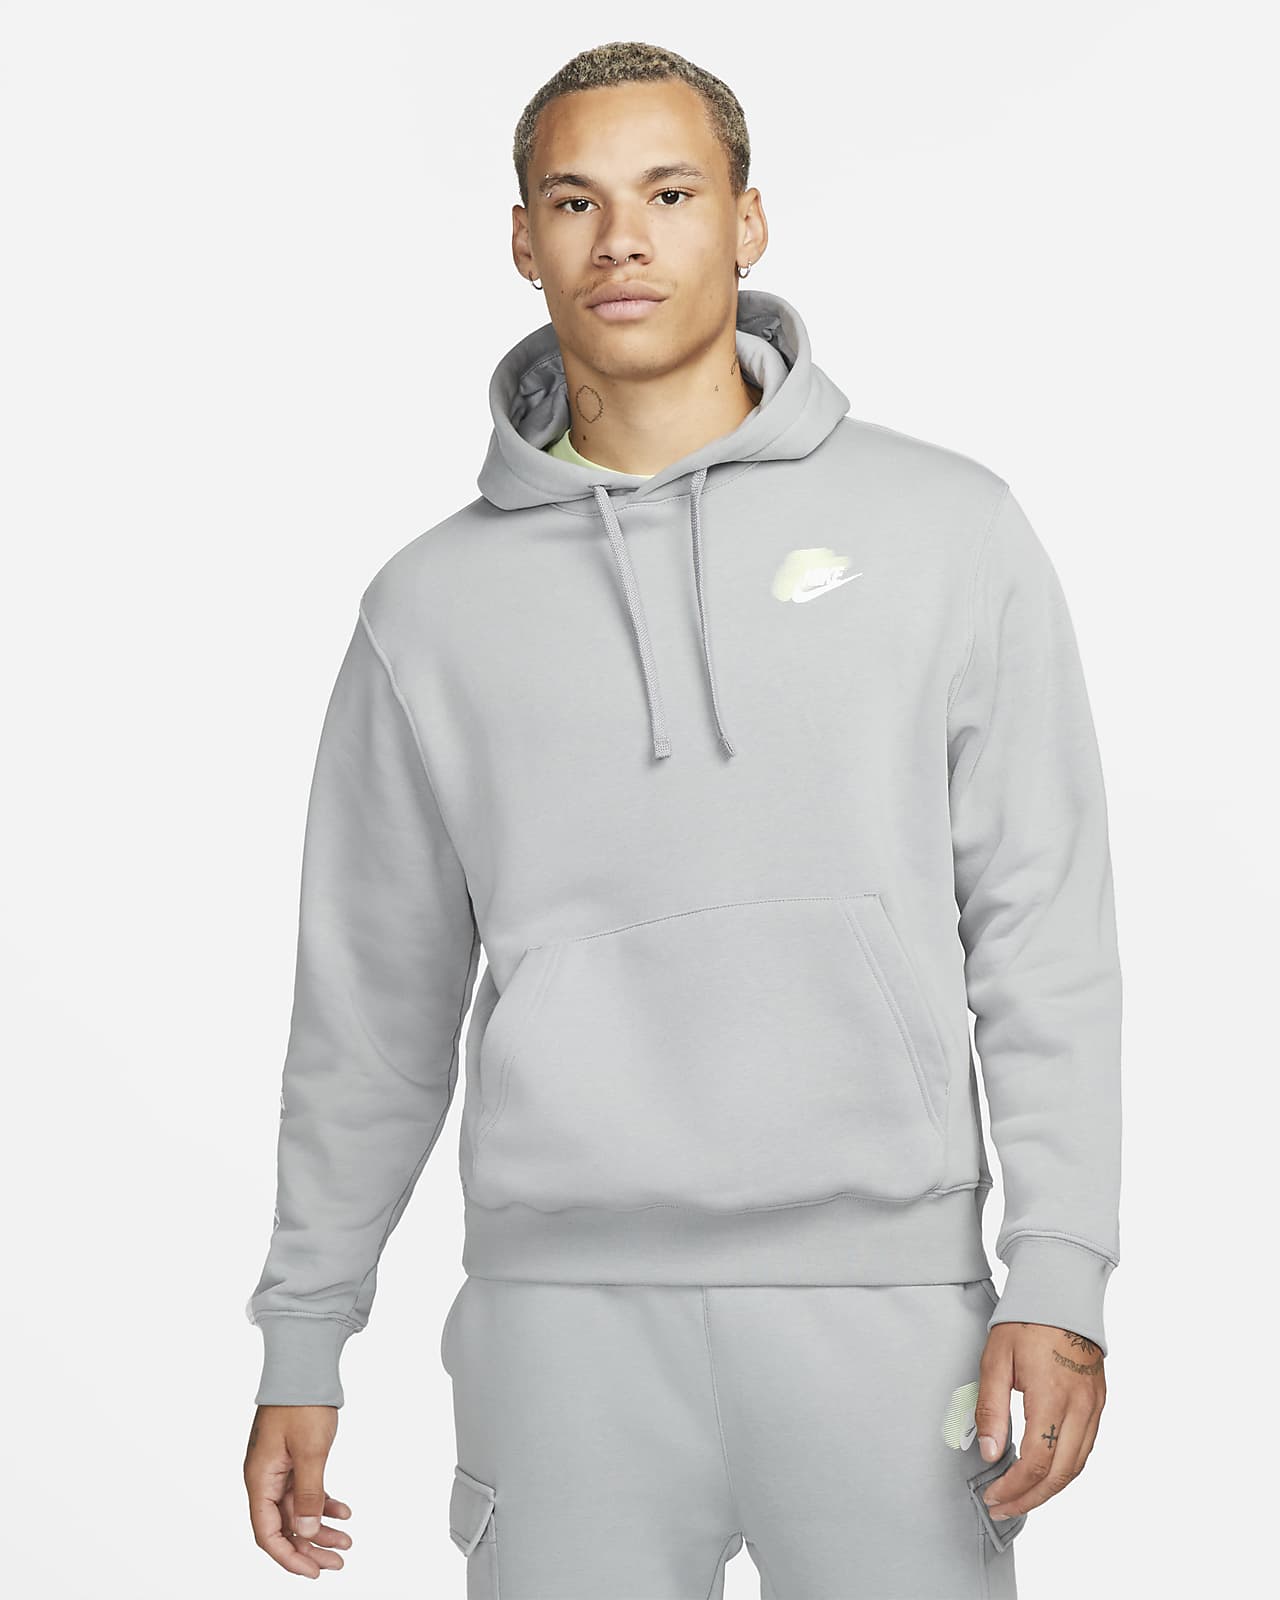 Felpa pullover in fleece con cappuccio Nike Sportswear Standard Issue – Uomo